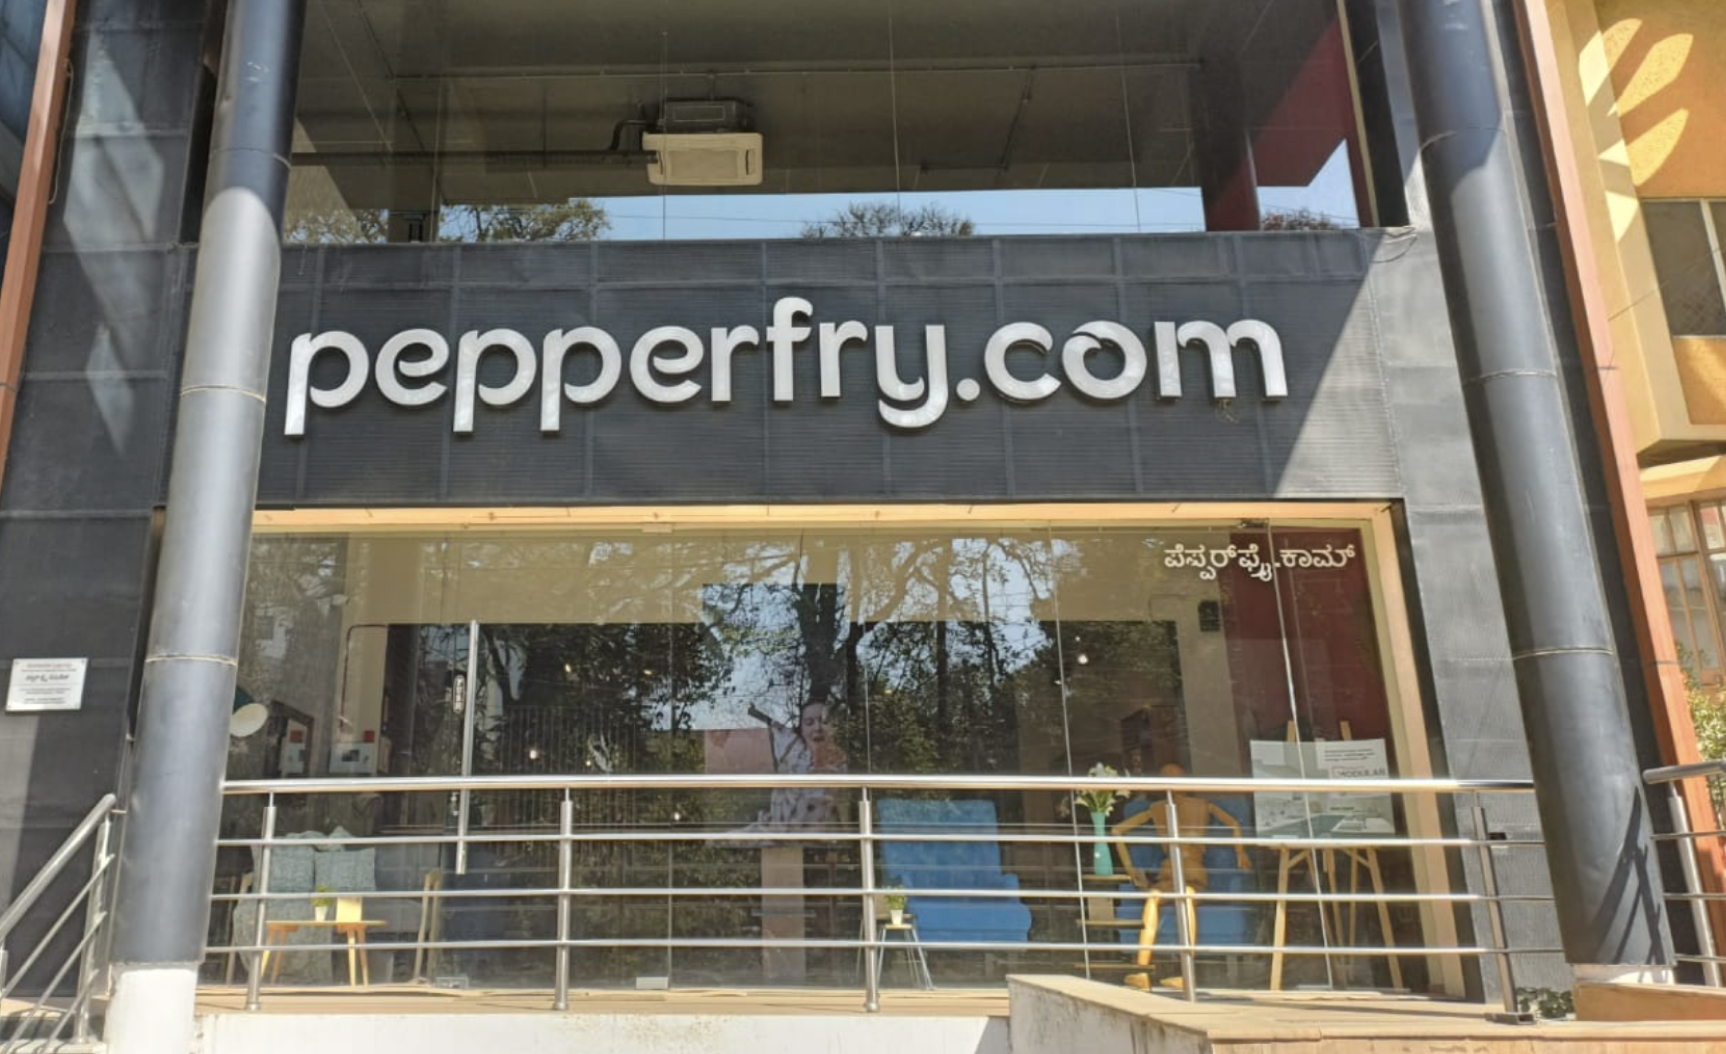 Studio Pepperfry - Basavangudi, Bengaluru